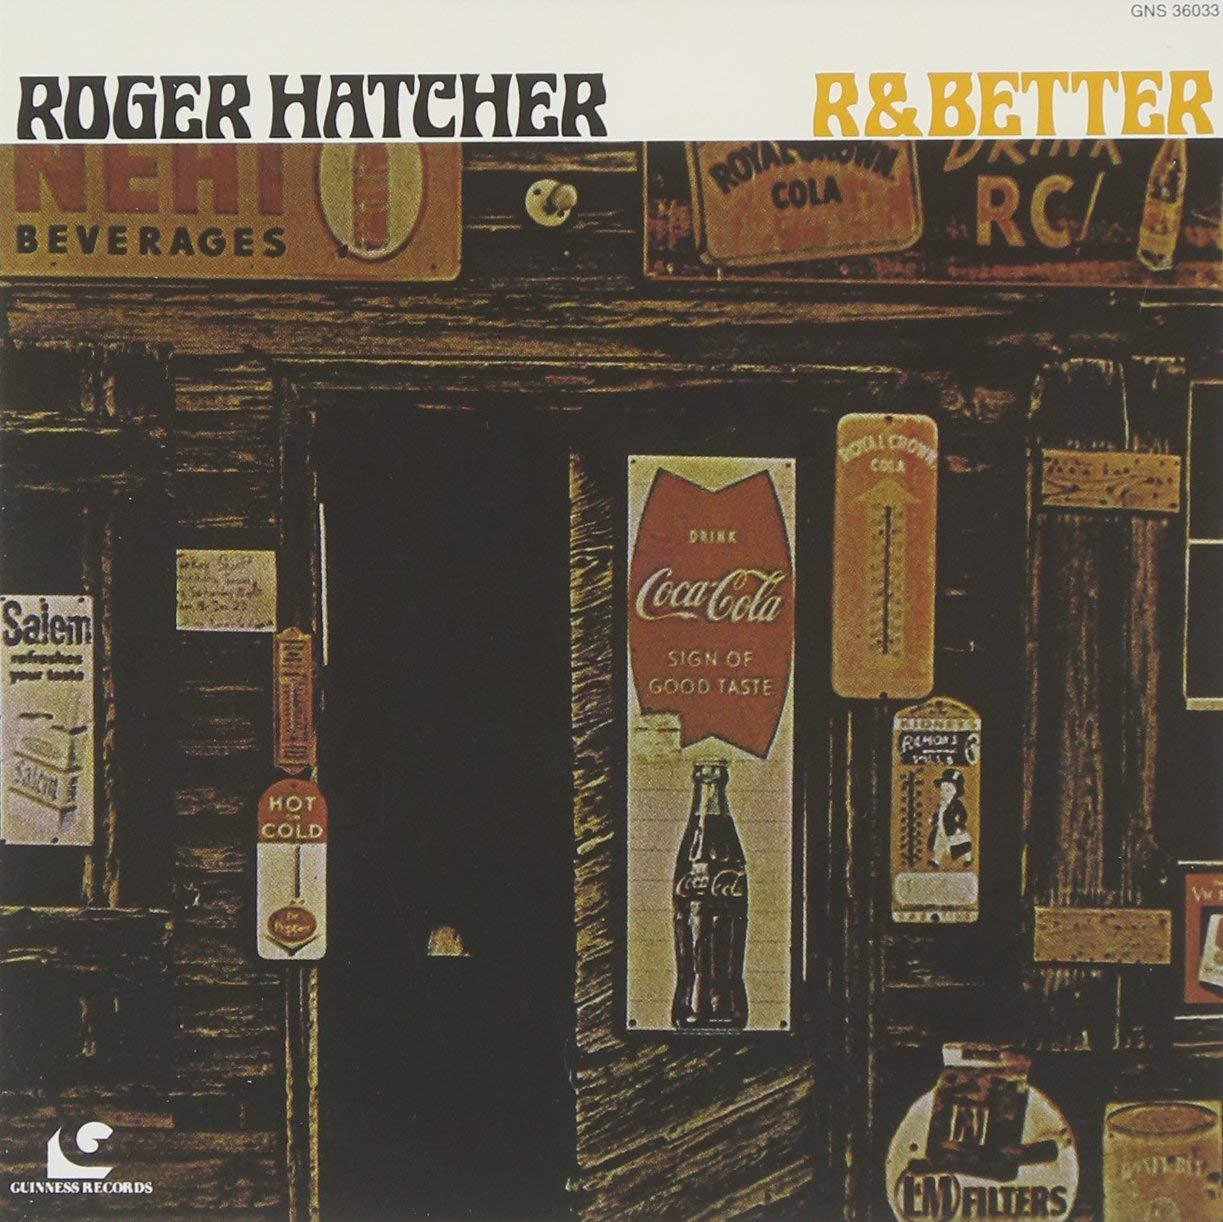 R & Better / Roger Hatcher